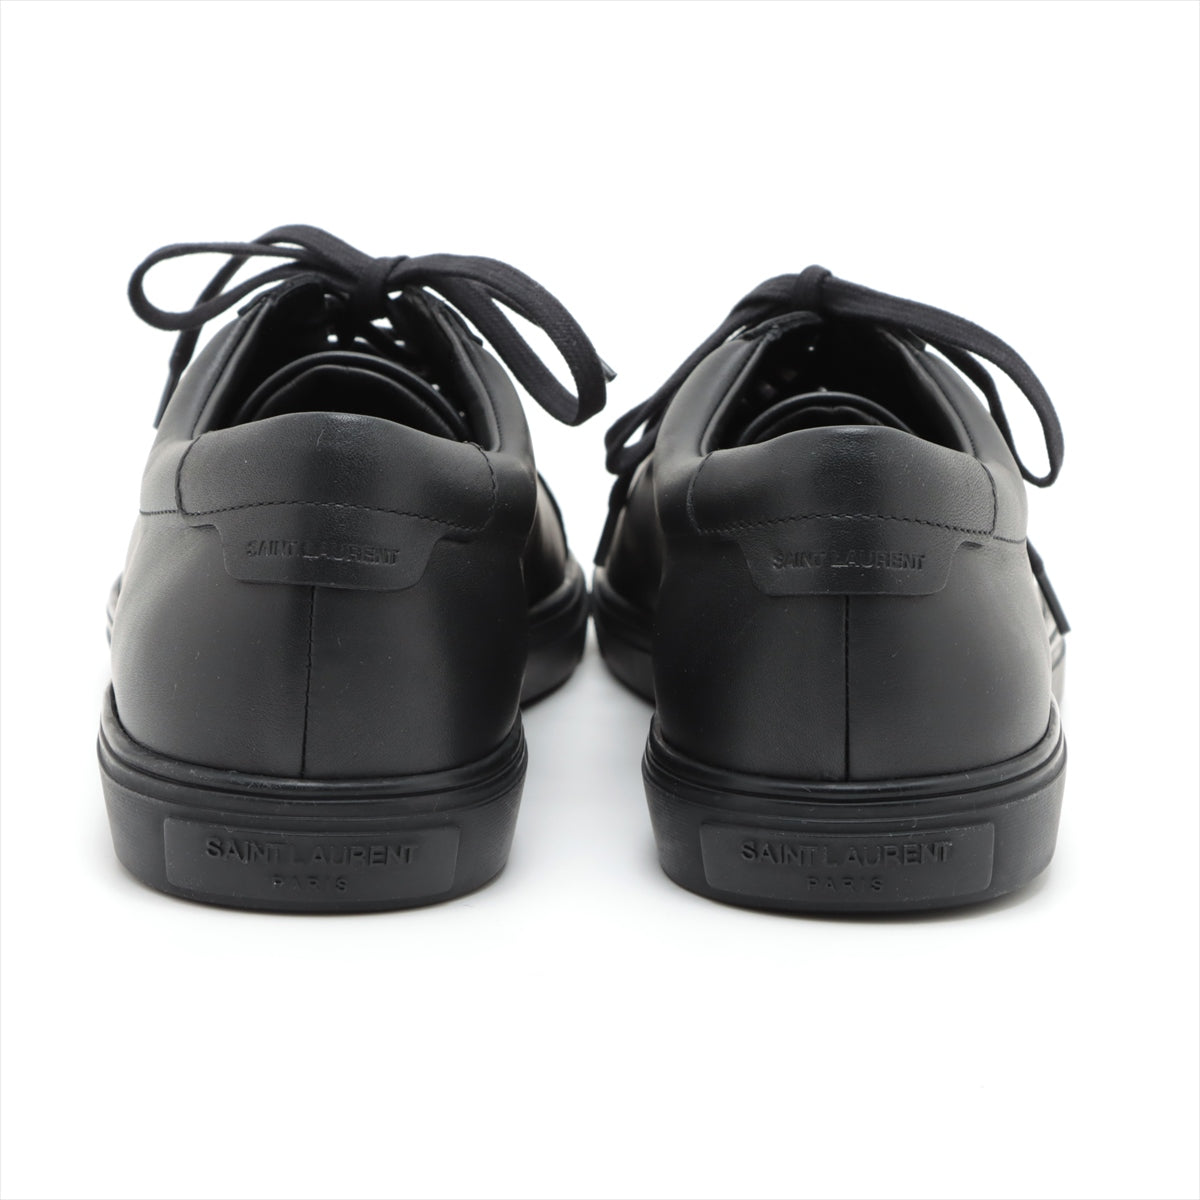 Saint Laurent Paris Leather Sneakers 46 Men's Black 606833 Replacement Laces Included